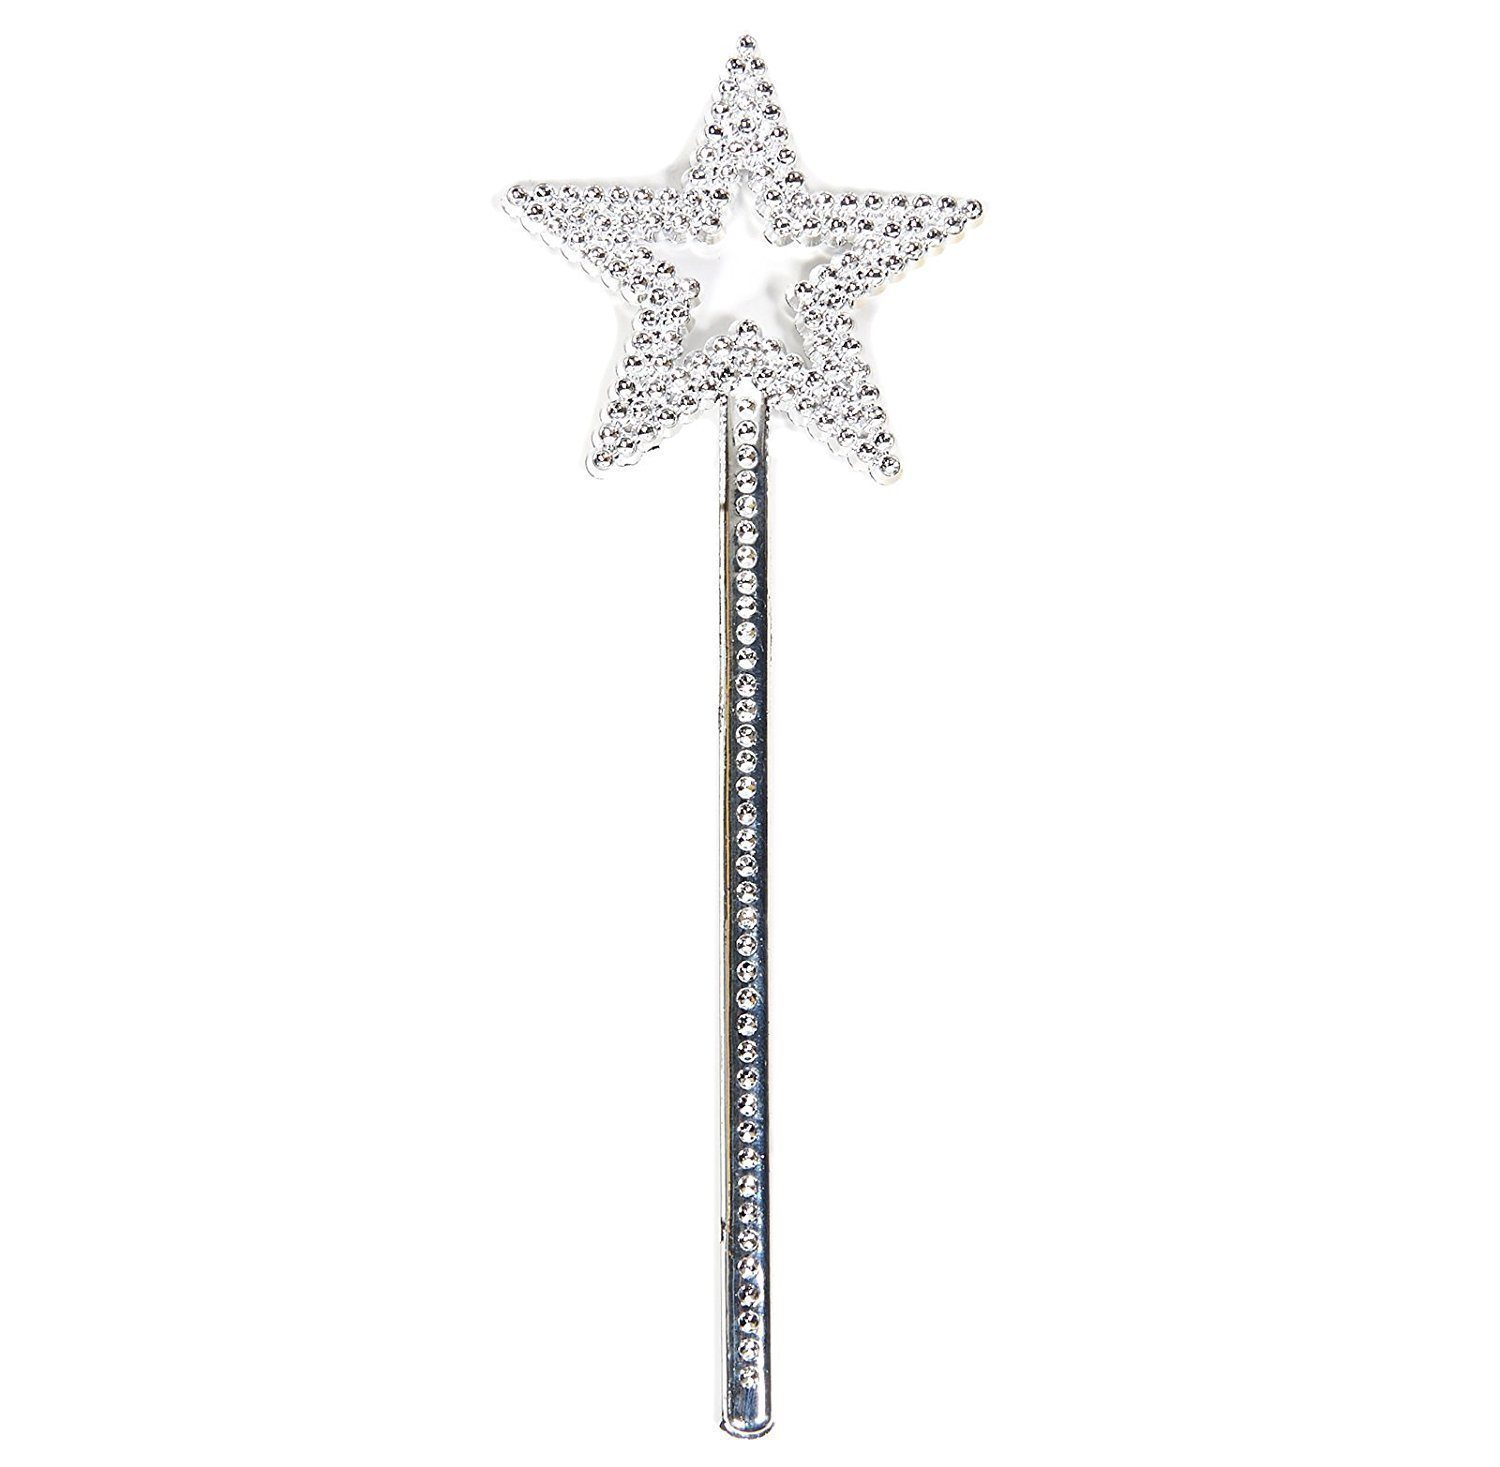 CLZ192 Yıldız Model Peri Asası Melek Asası Prenses Asası Metalize Gümüş Renk (4172)